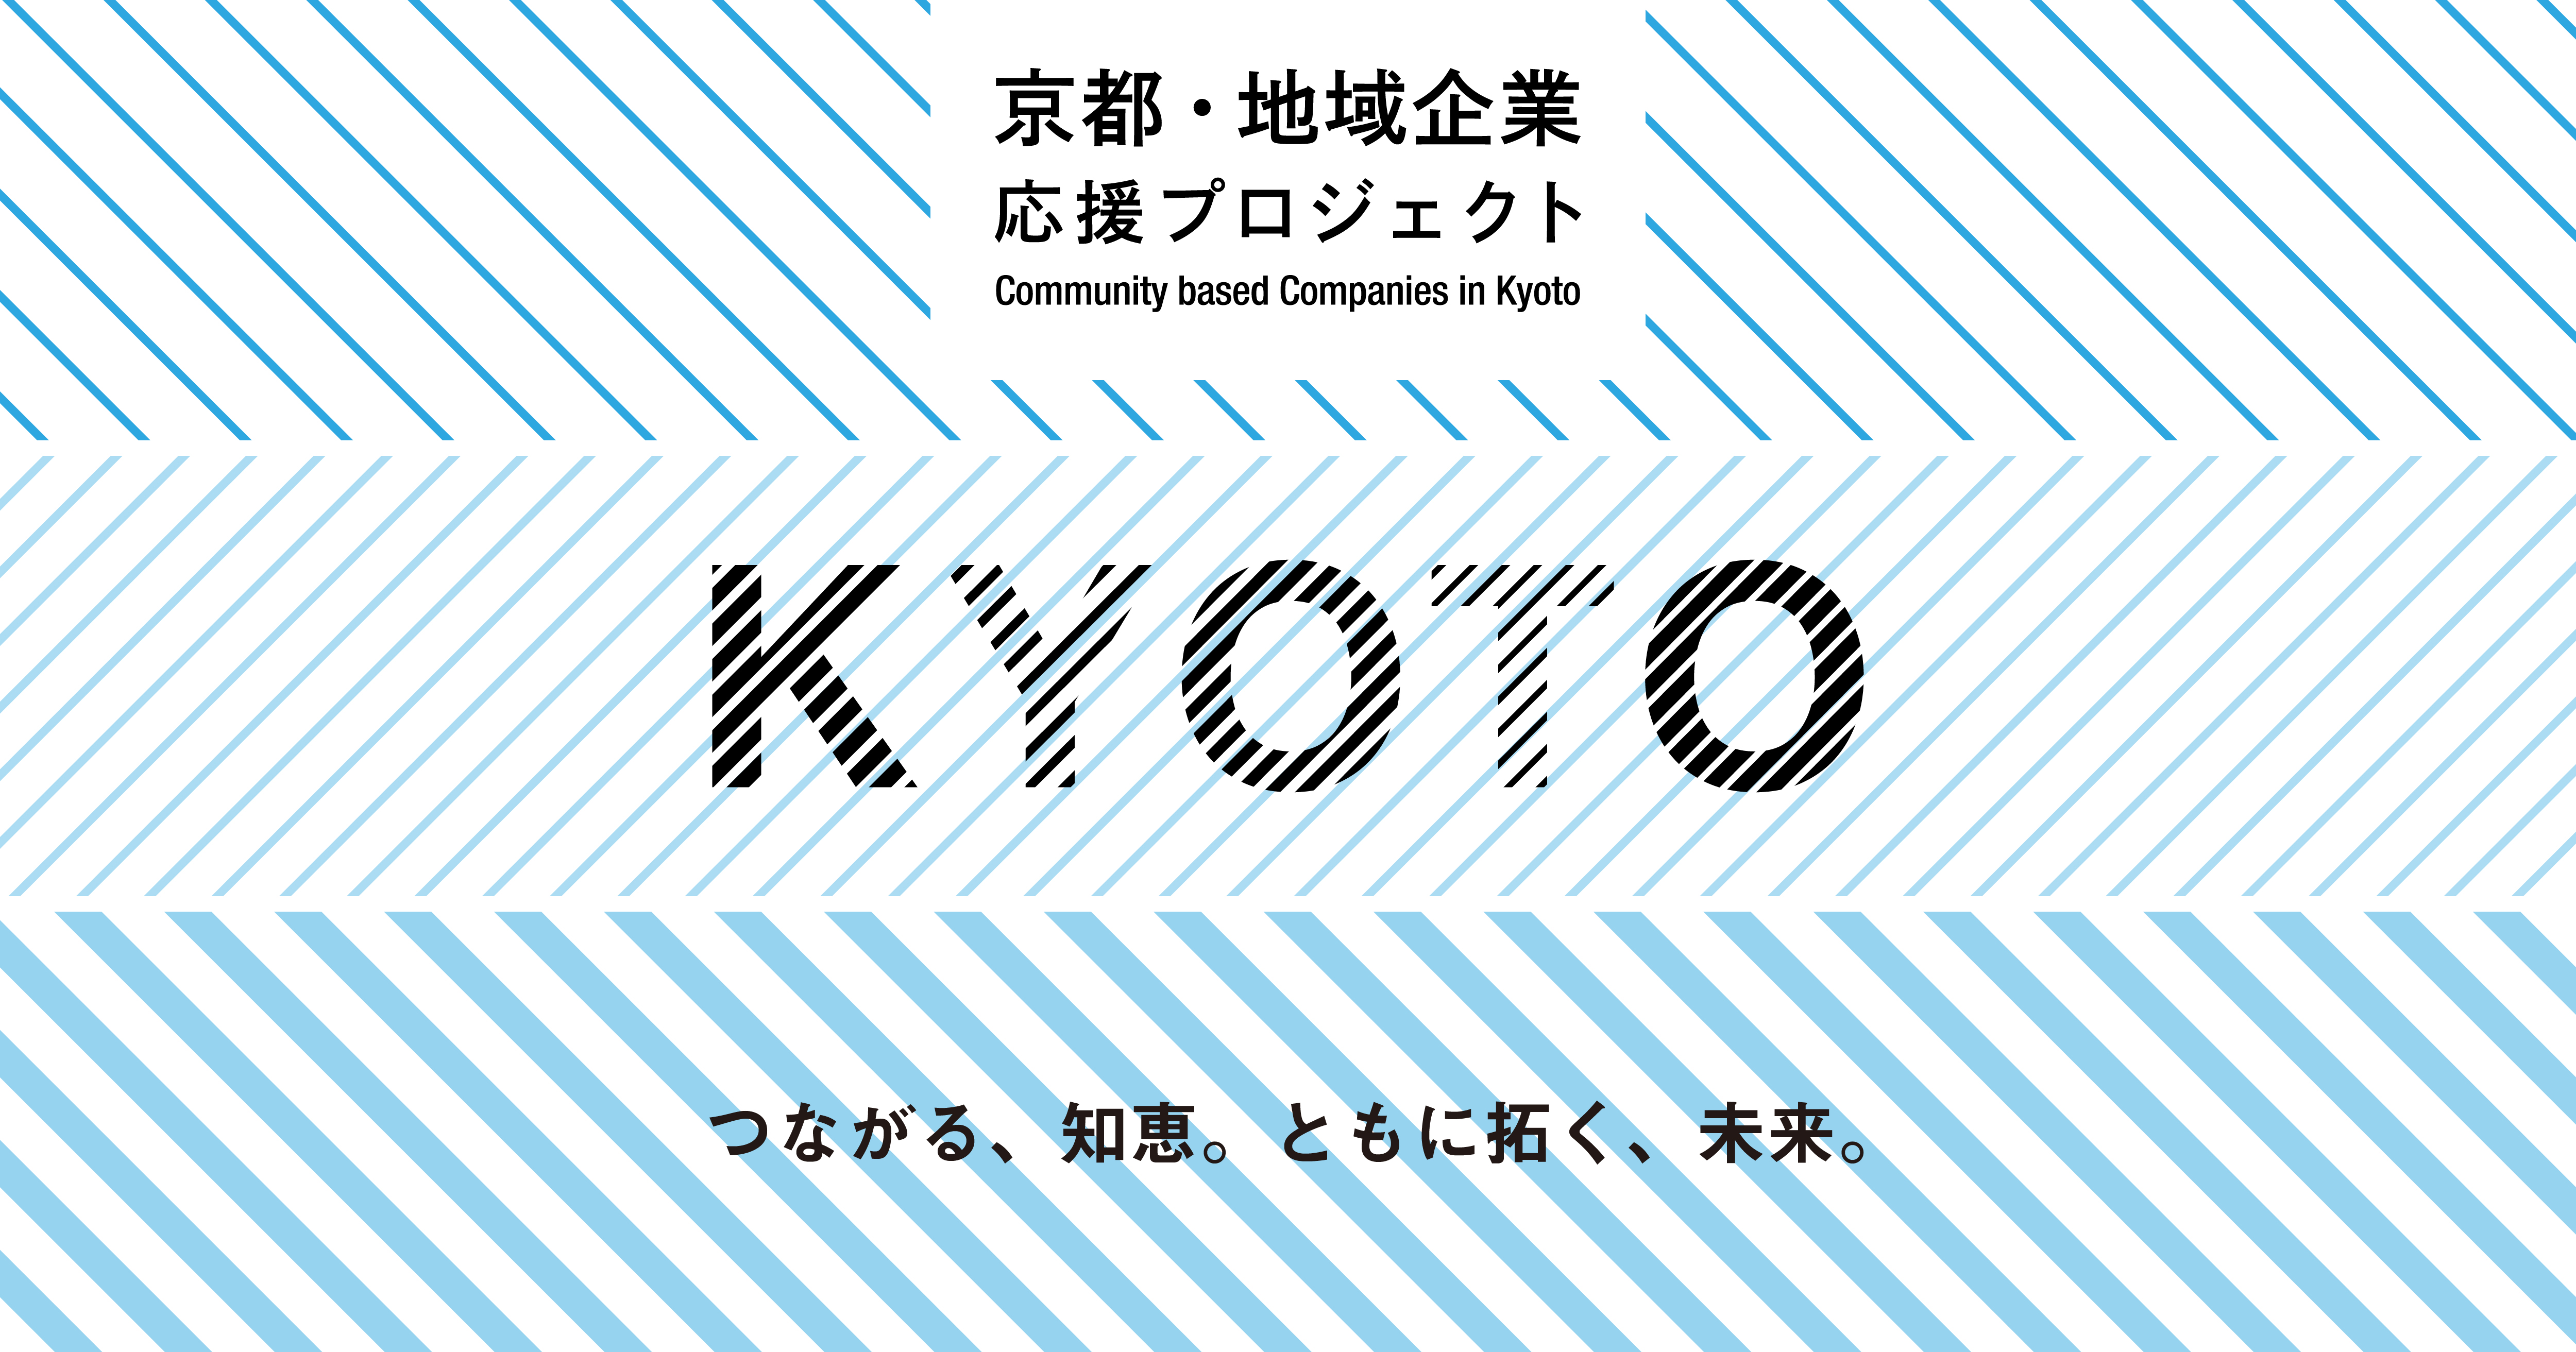 表彰制度と受賞企業 京都 地域企業応援プロジェクト